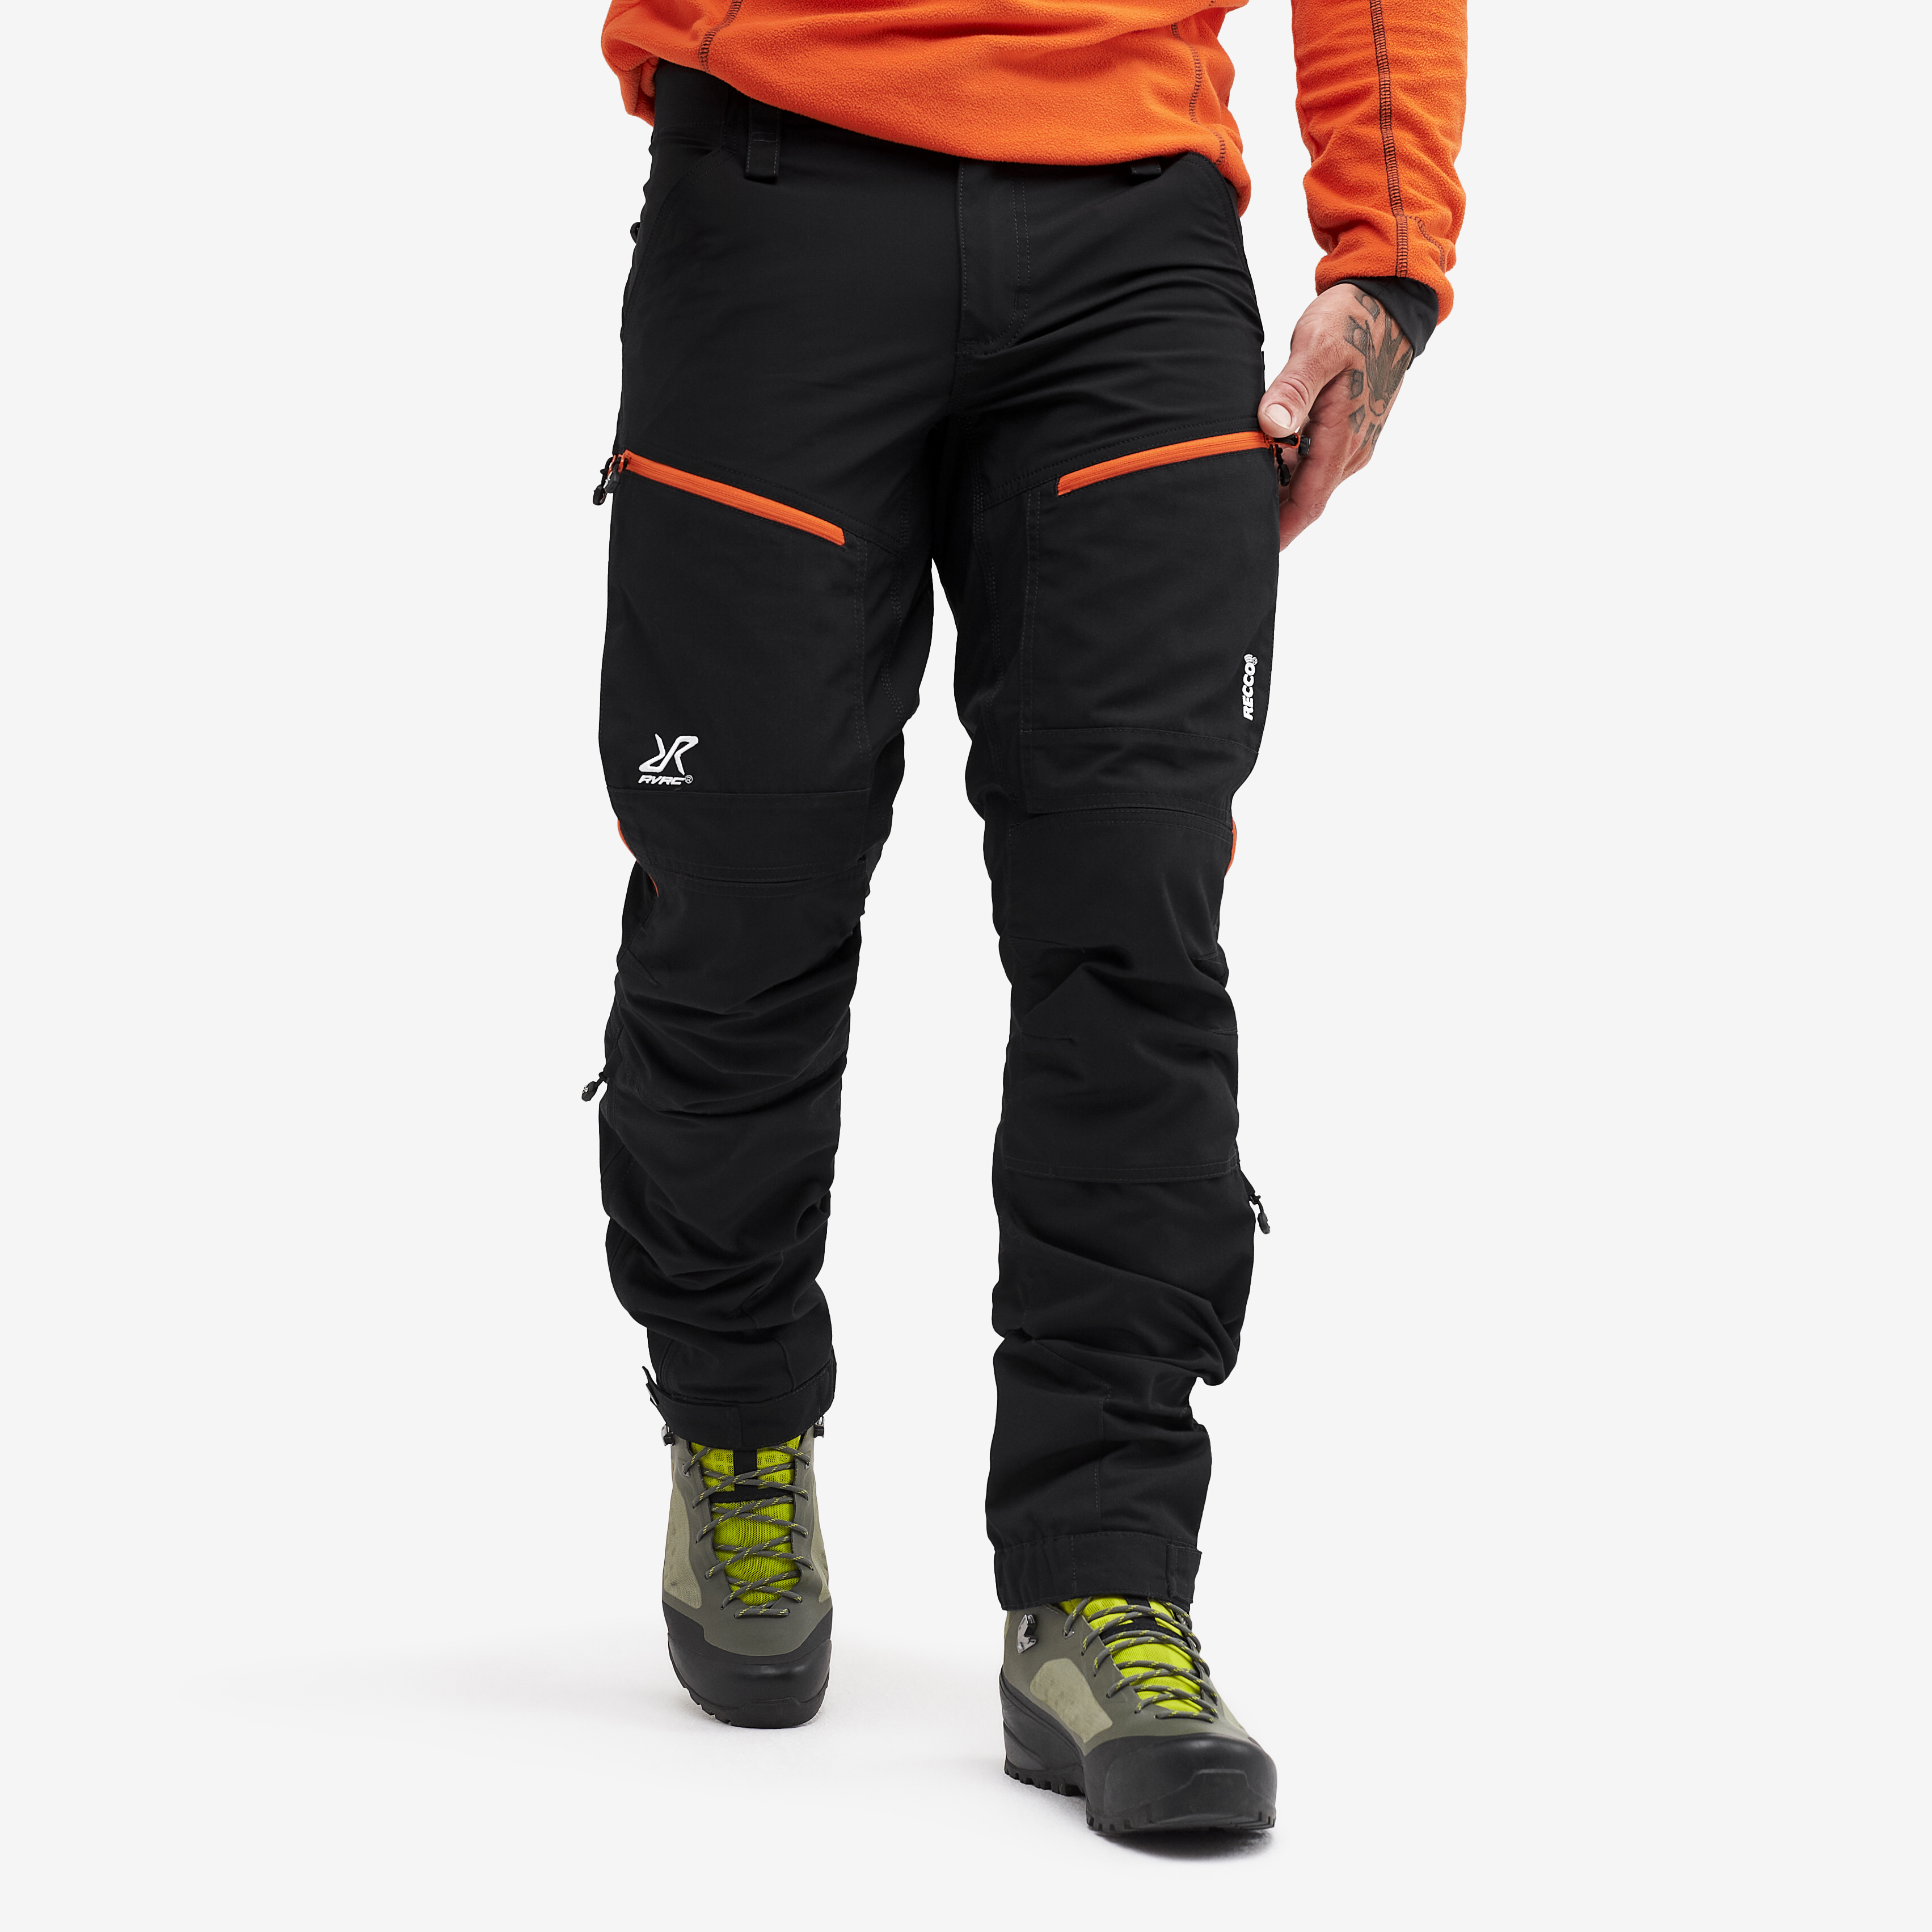 RVRC GP Pro Rescue Pants Black/Orange 2.0 Hombres